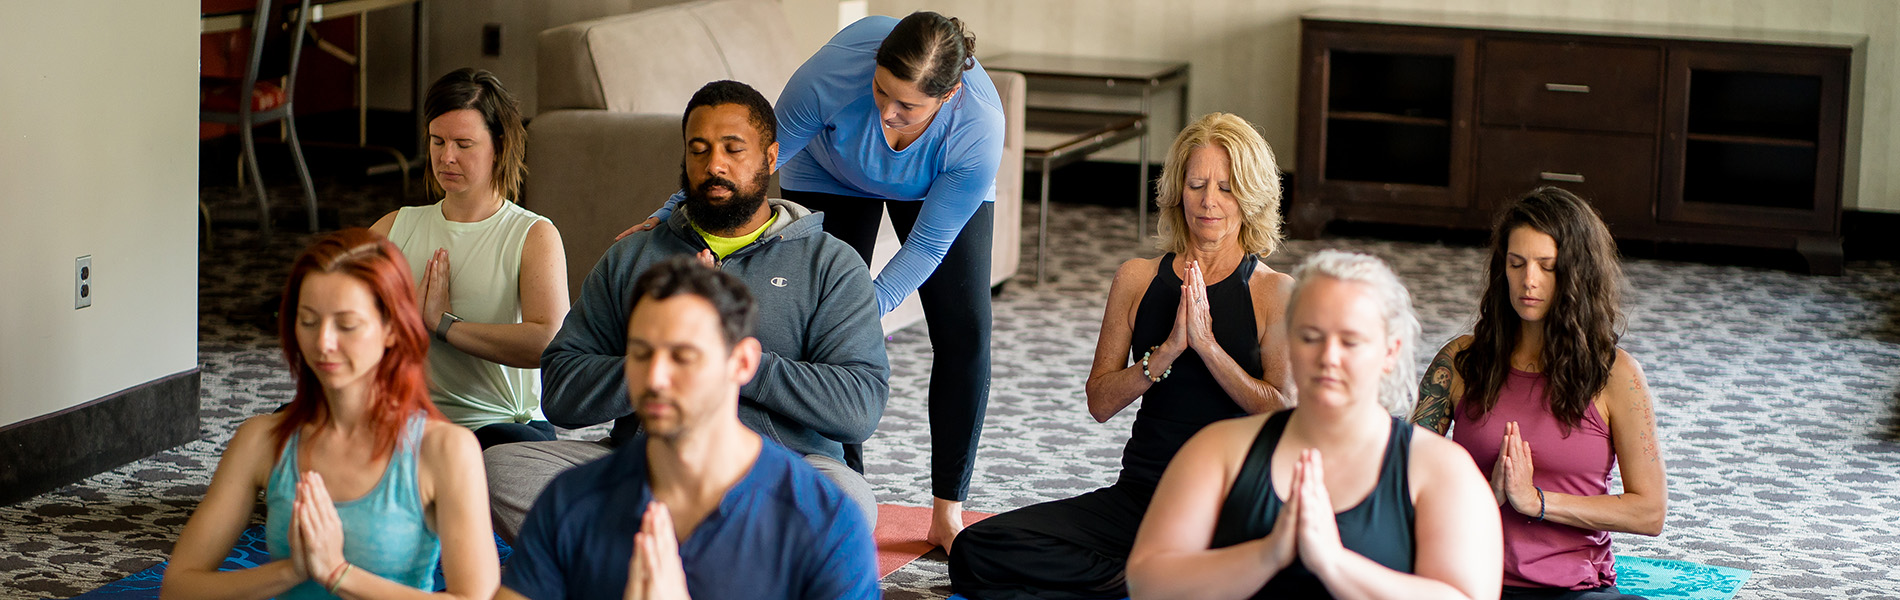 Corporate Yoga Classes & Yoga At Work